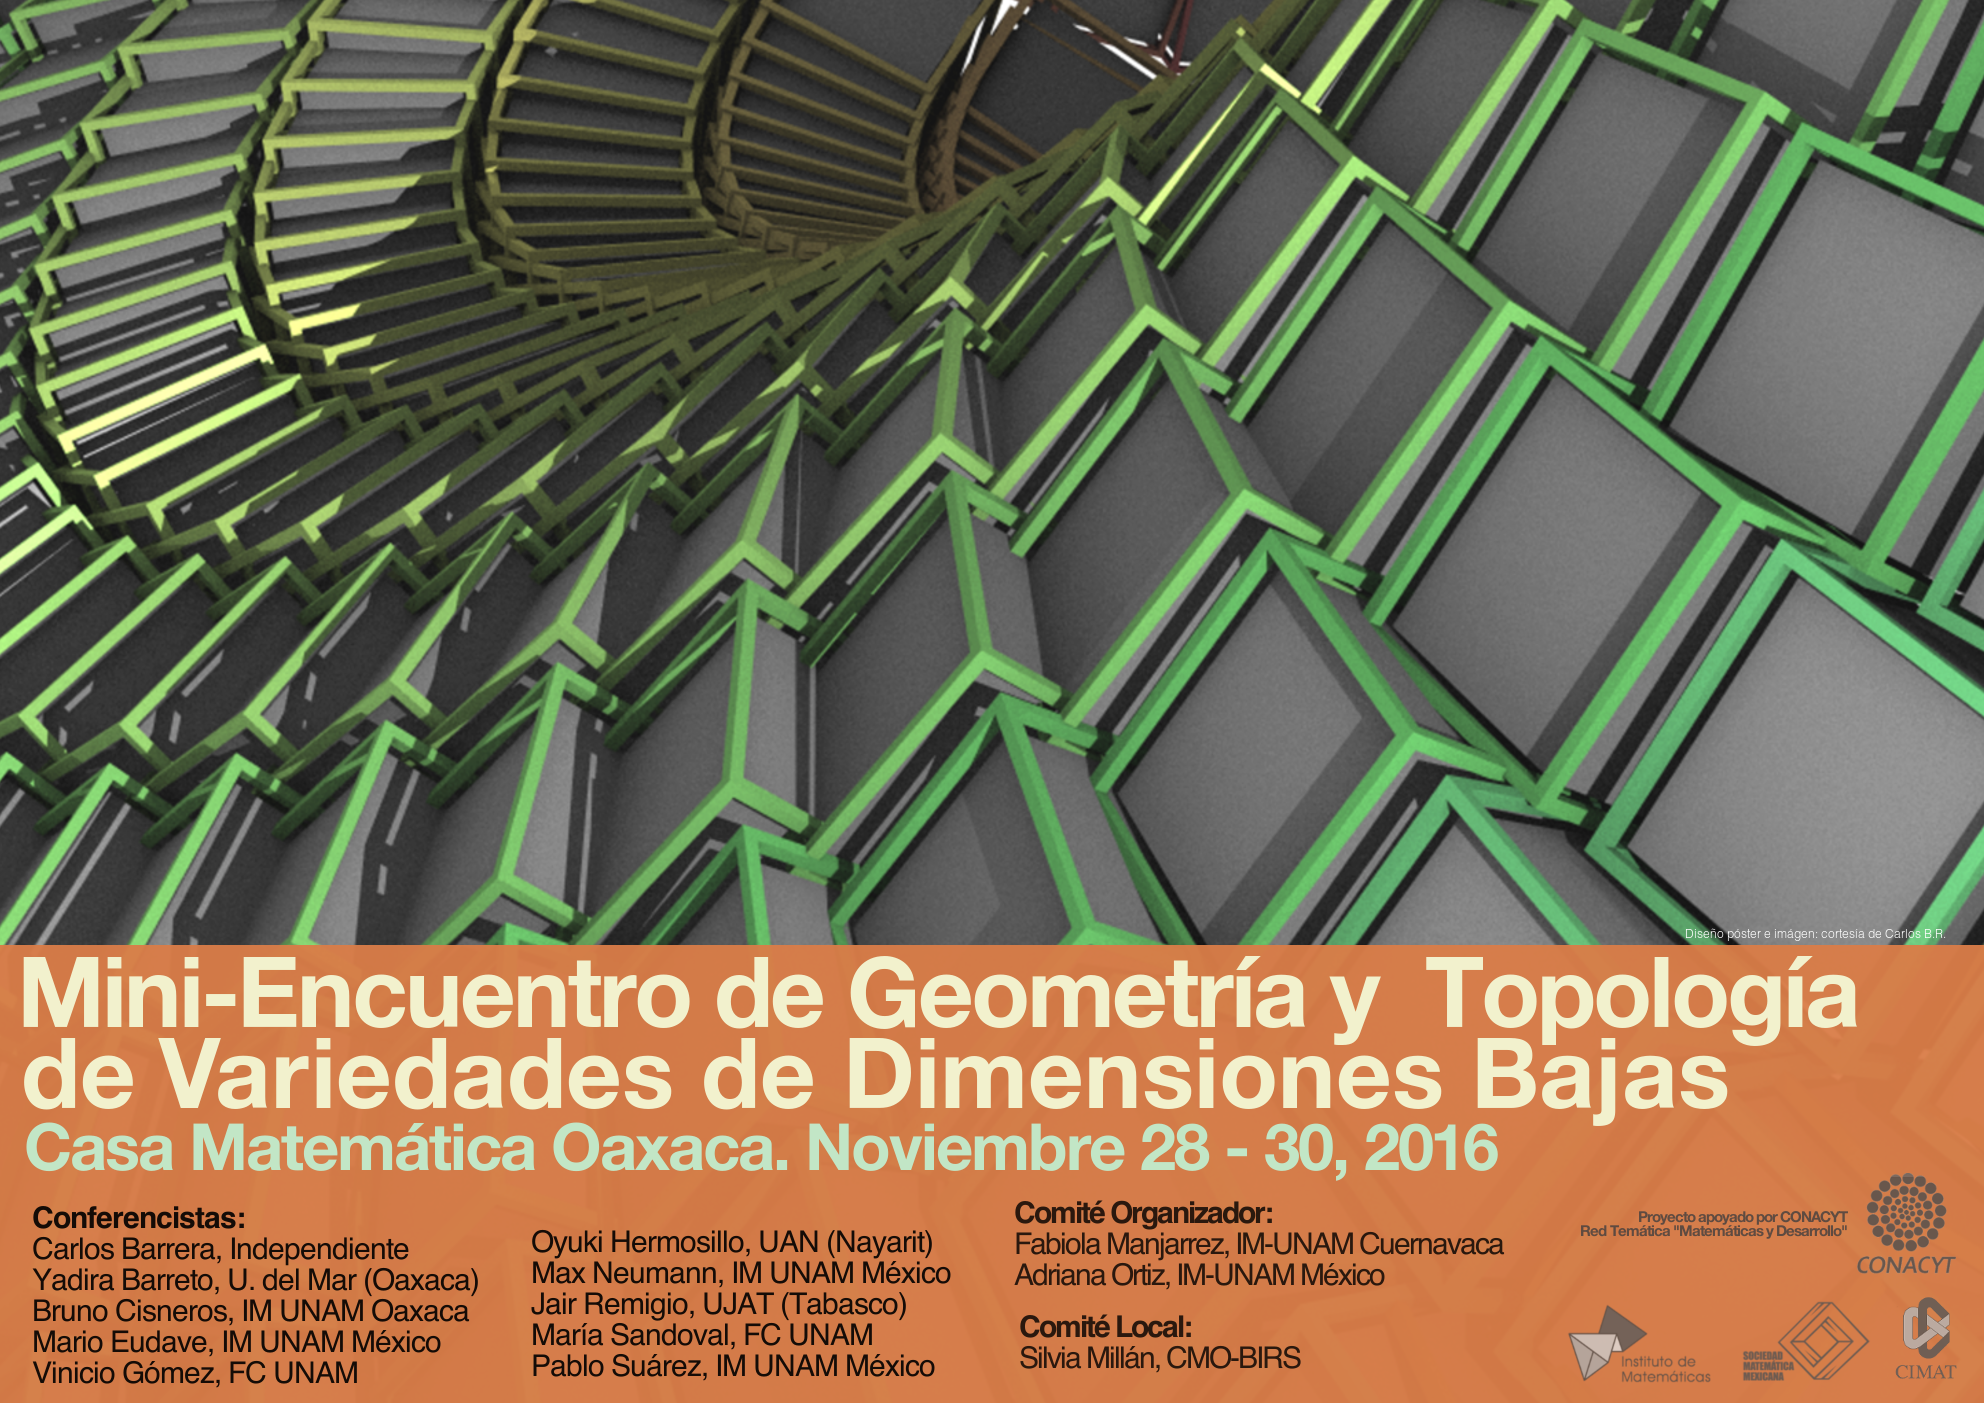 Mini-Encuentro de Geometría y Topología en Variedades de Dimensiones Bajas